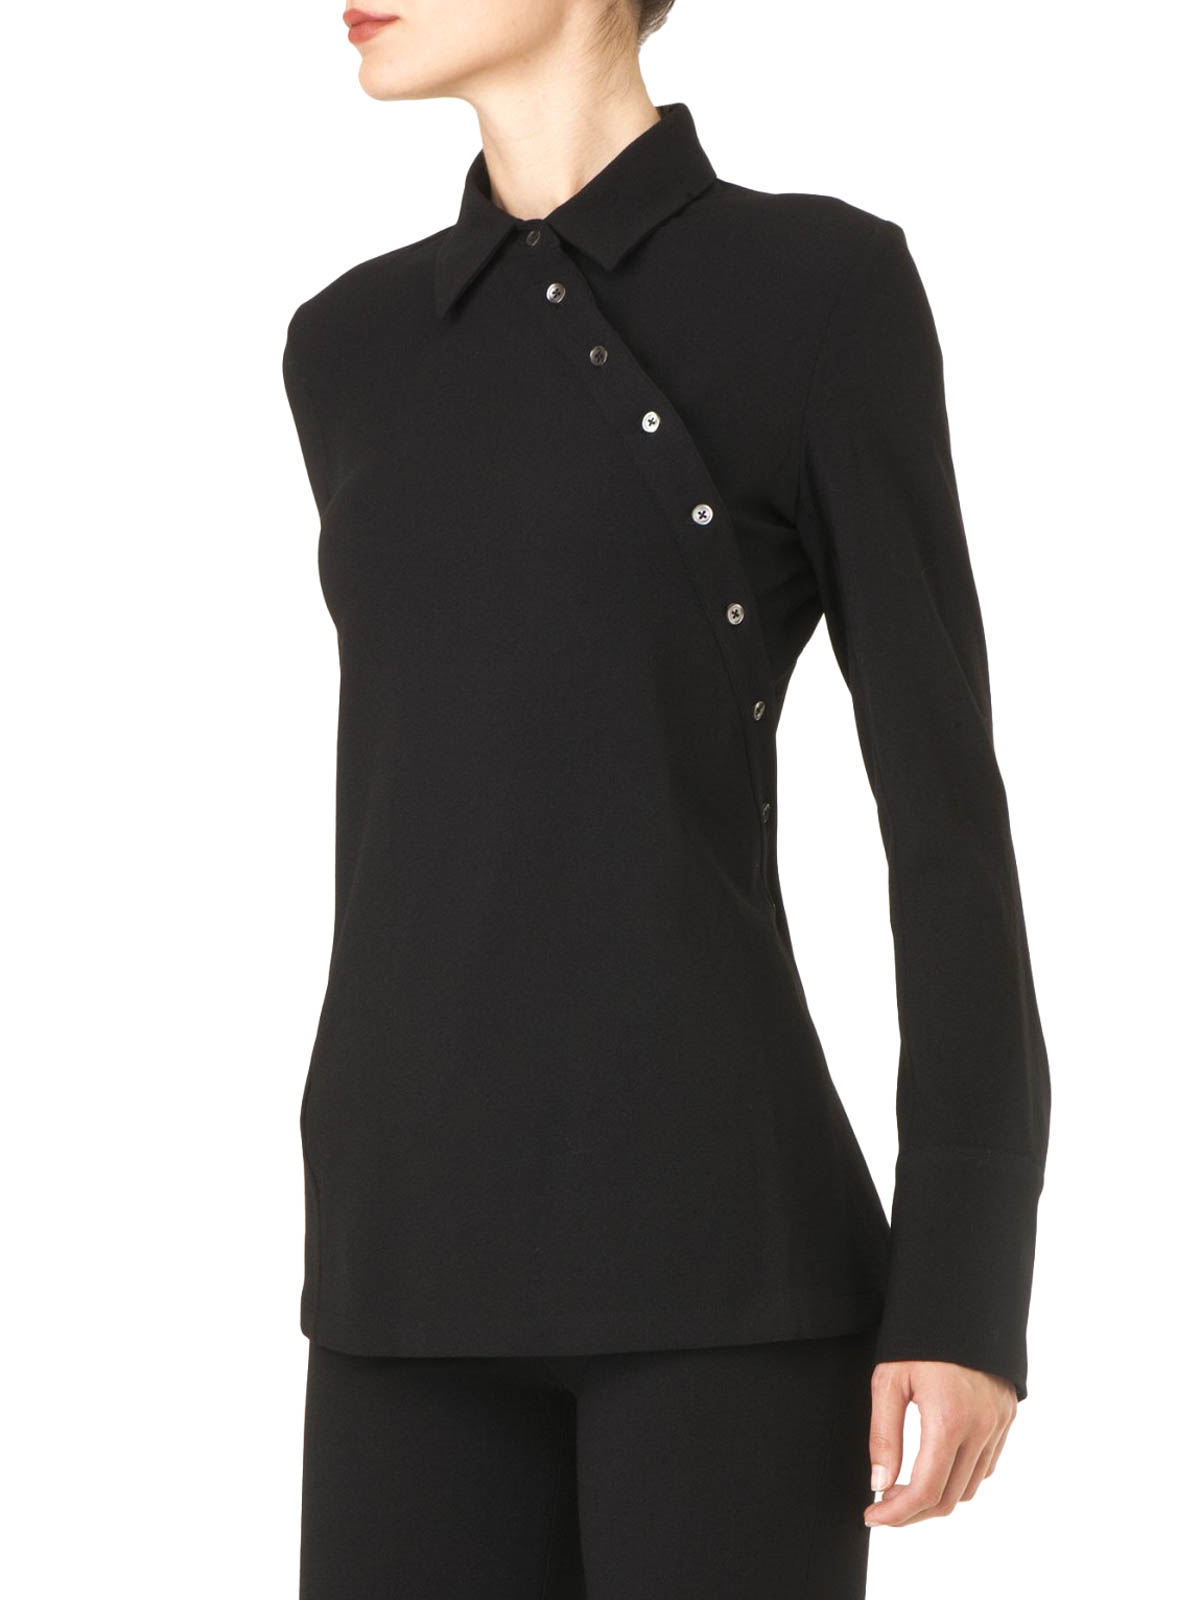 Femme Vêtements Tops Chemises Chemise Ann Demeulemeester en coloris Noir 